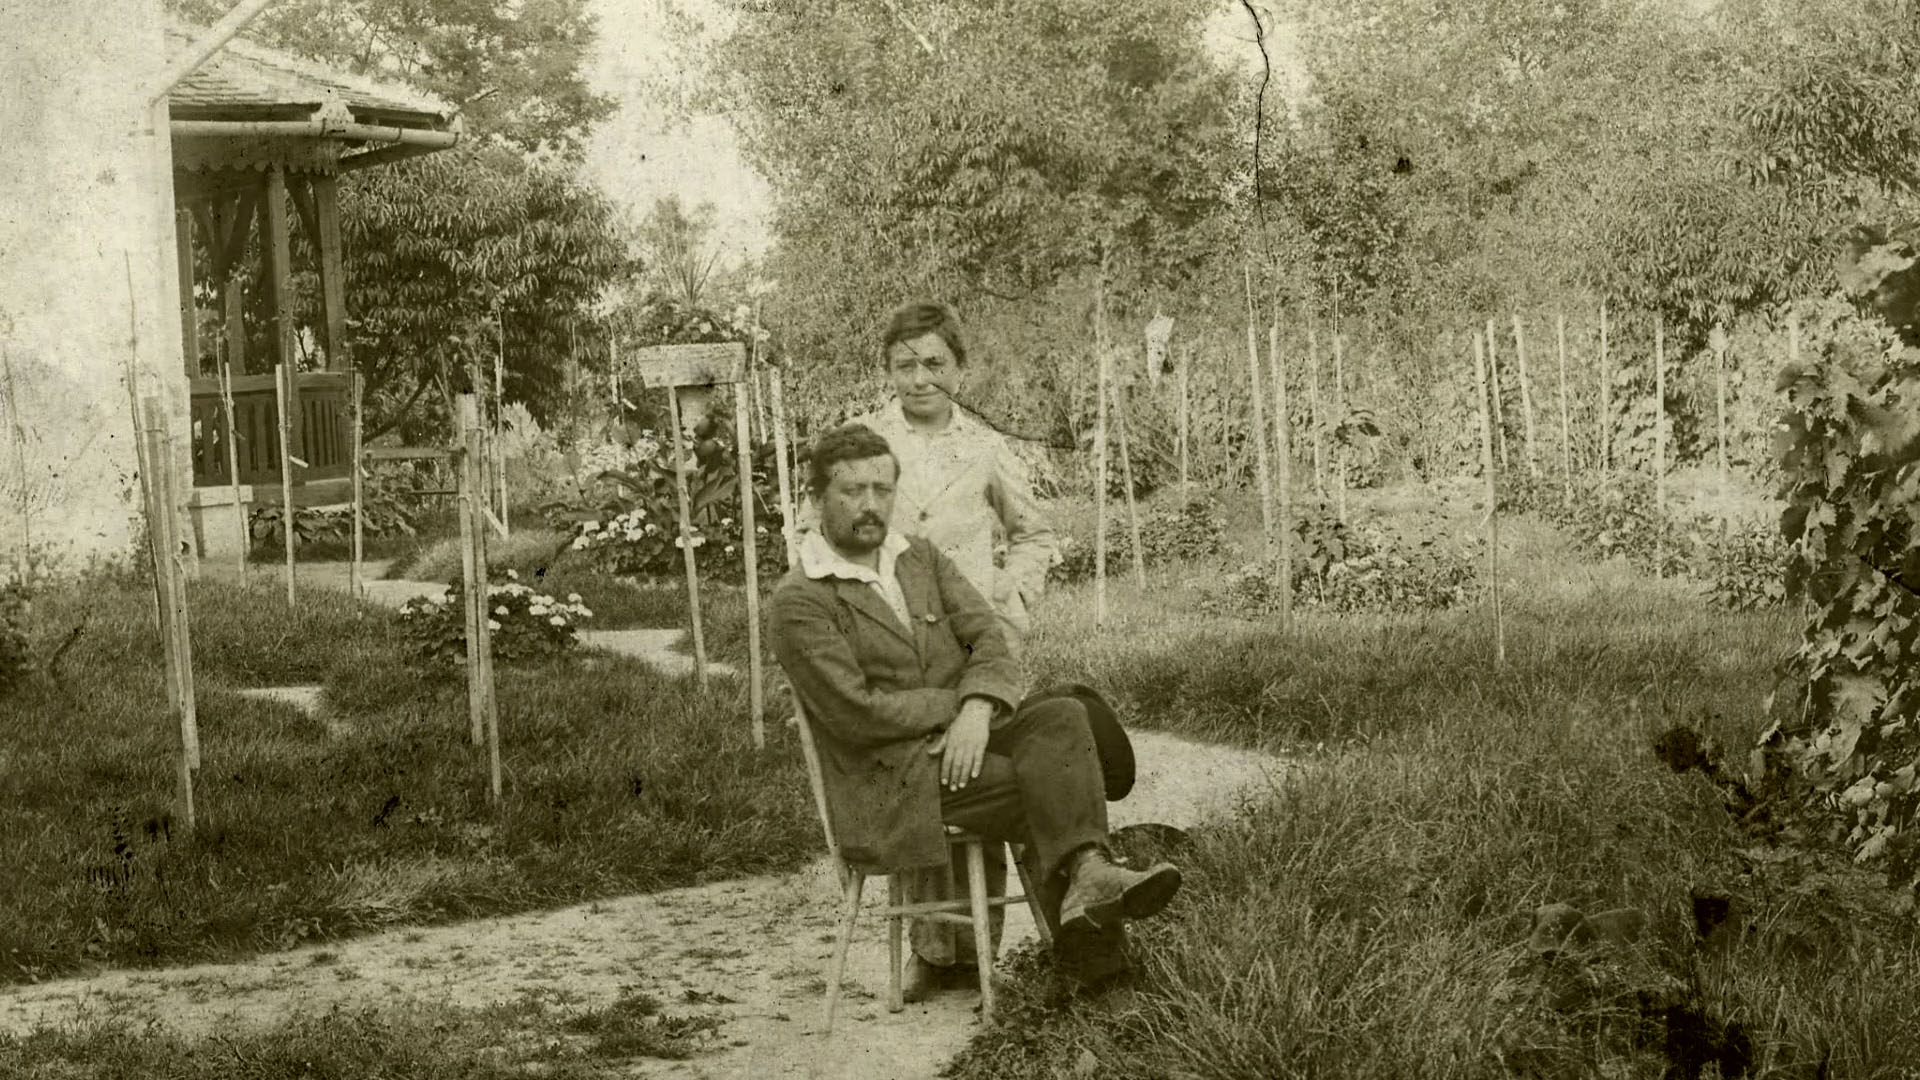 Kernstok és felesége – korabeli fotó a filmből